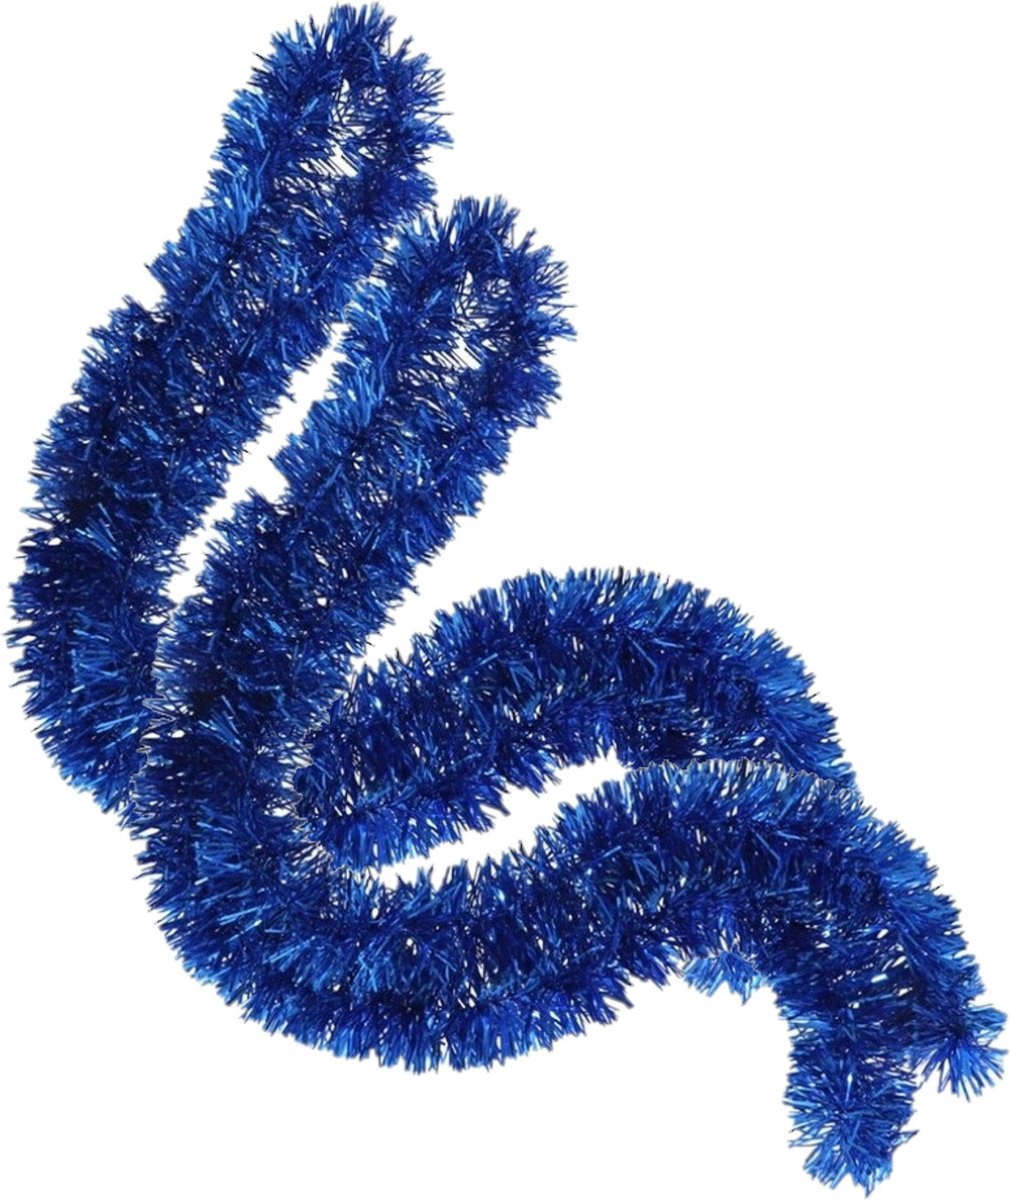 2x stuks kerstboom folie slingers/lametta guirlandes van 180 x 7 cm in de kleur glitter blauw